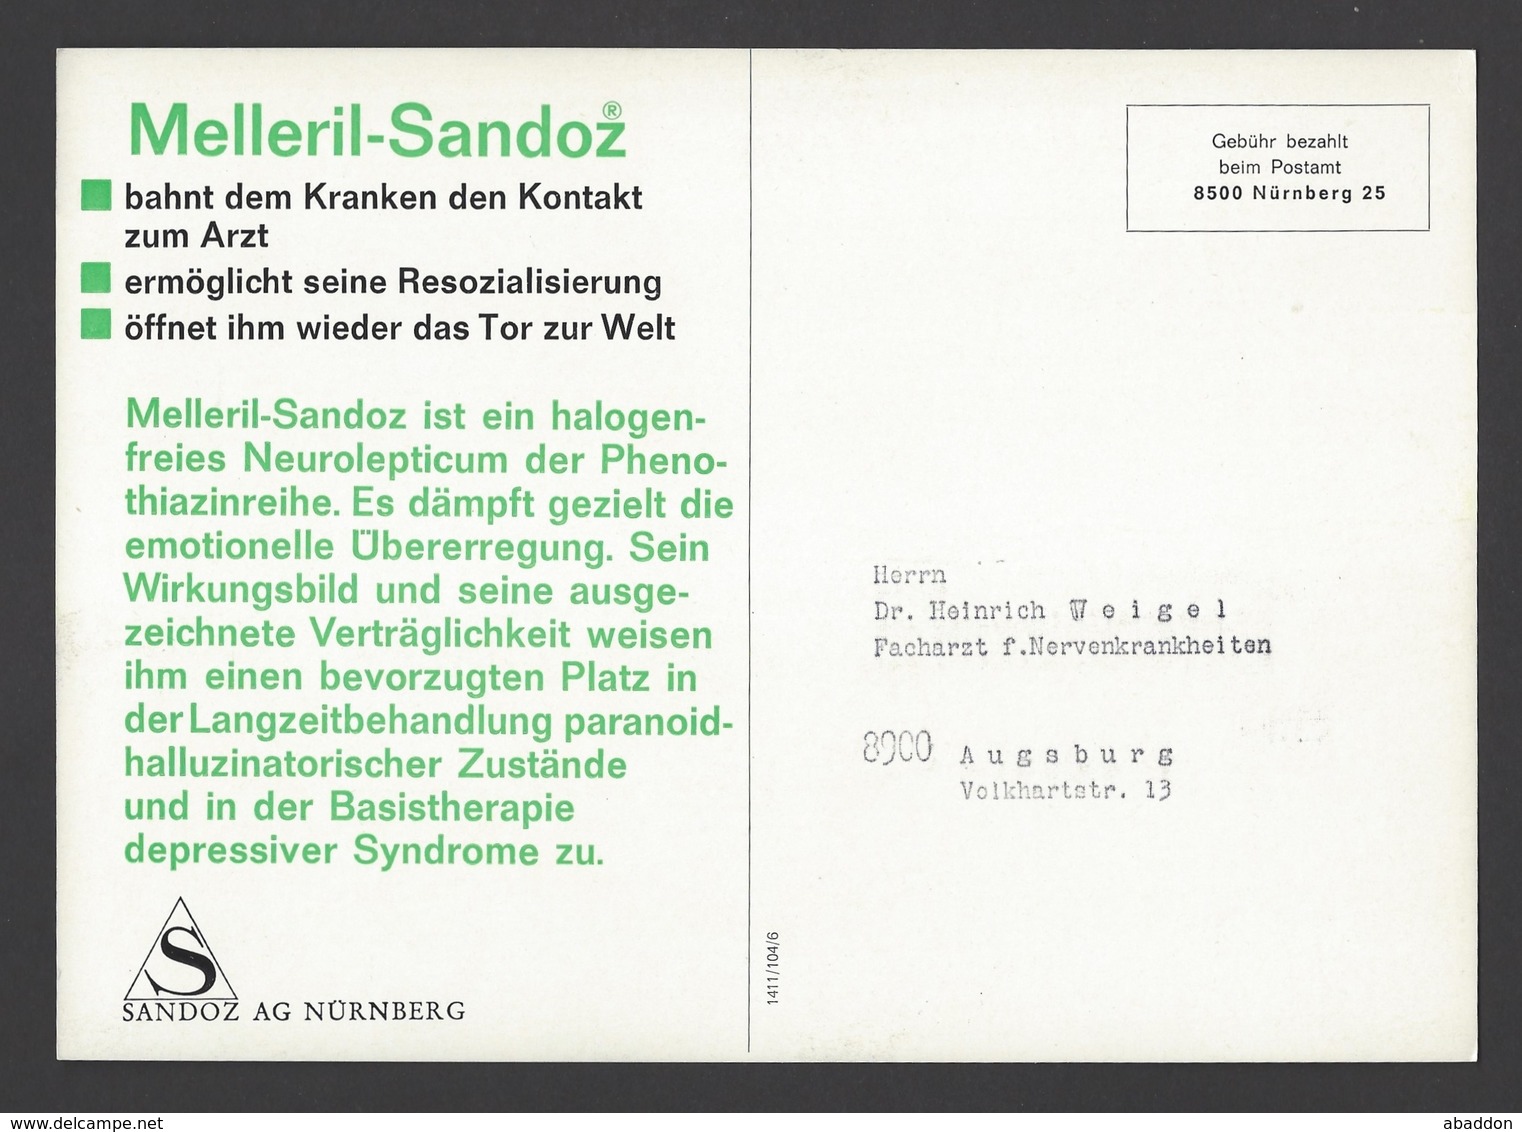 BRD - Gebühr Bezahlt Beim Postamt Nürnberg Auf Großkarte Sandoz AG - Melleril-Sandoz Ca. Um 1960 - Farmacia